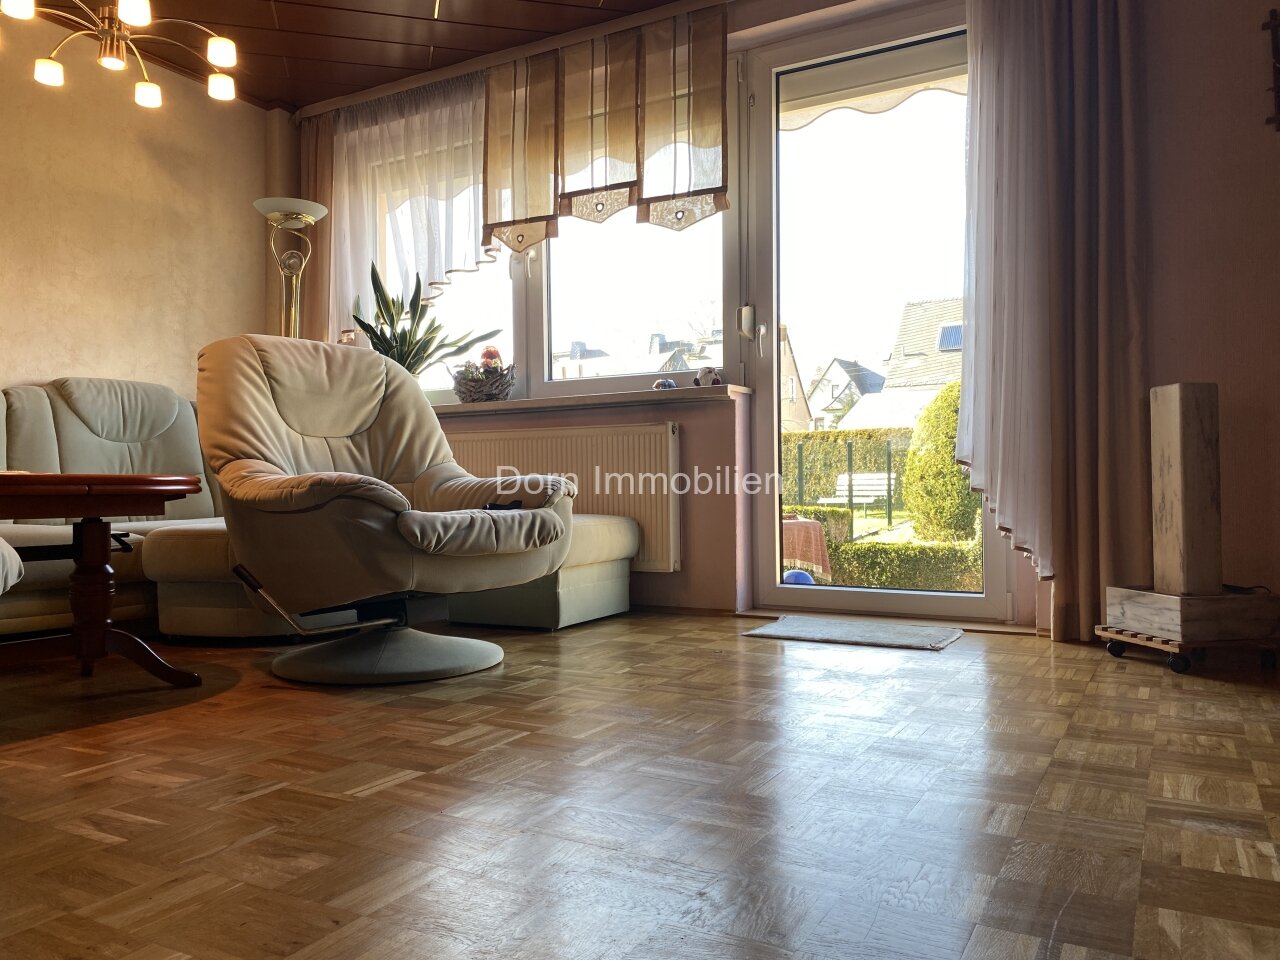 Wohnzimmer mit Echtholzparkett